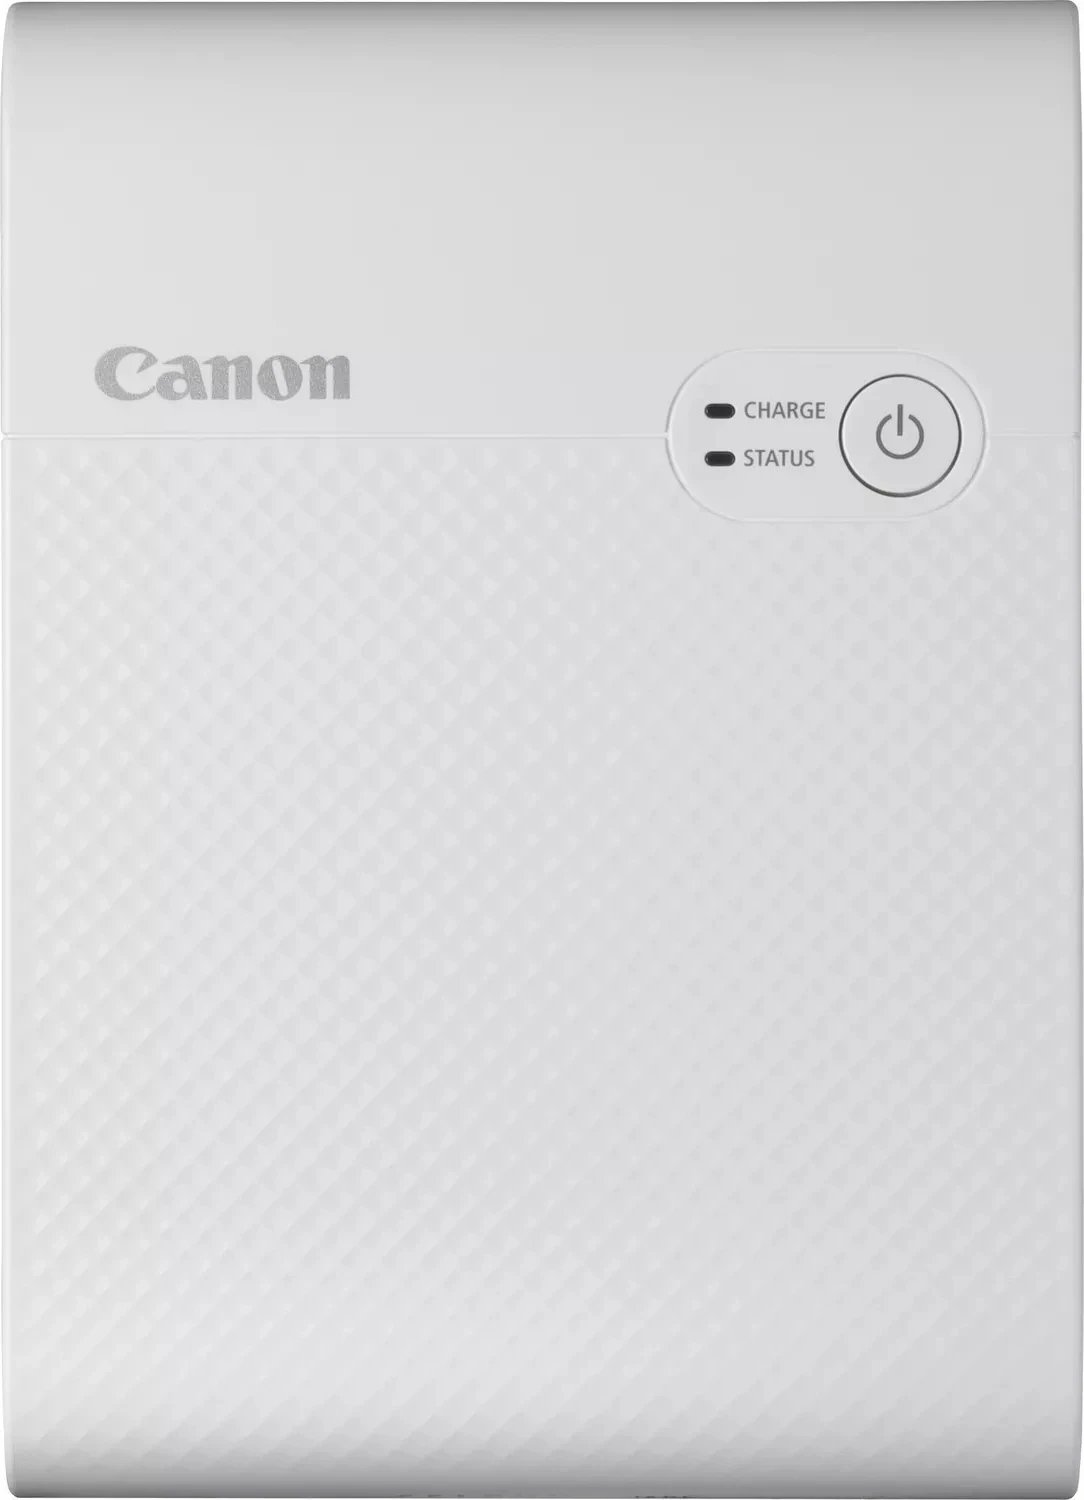 Printer Canon Selphy Square QX10, i bardhë